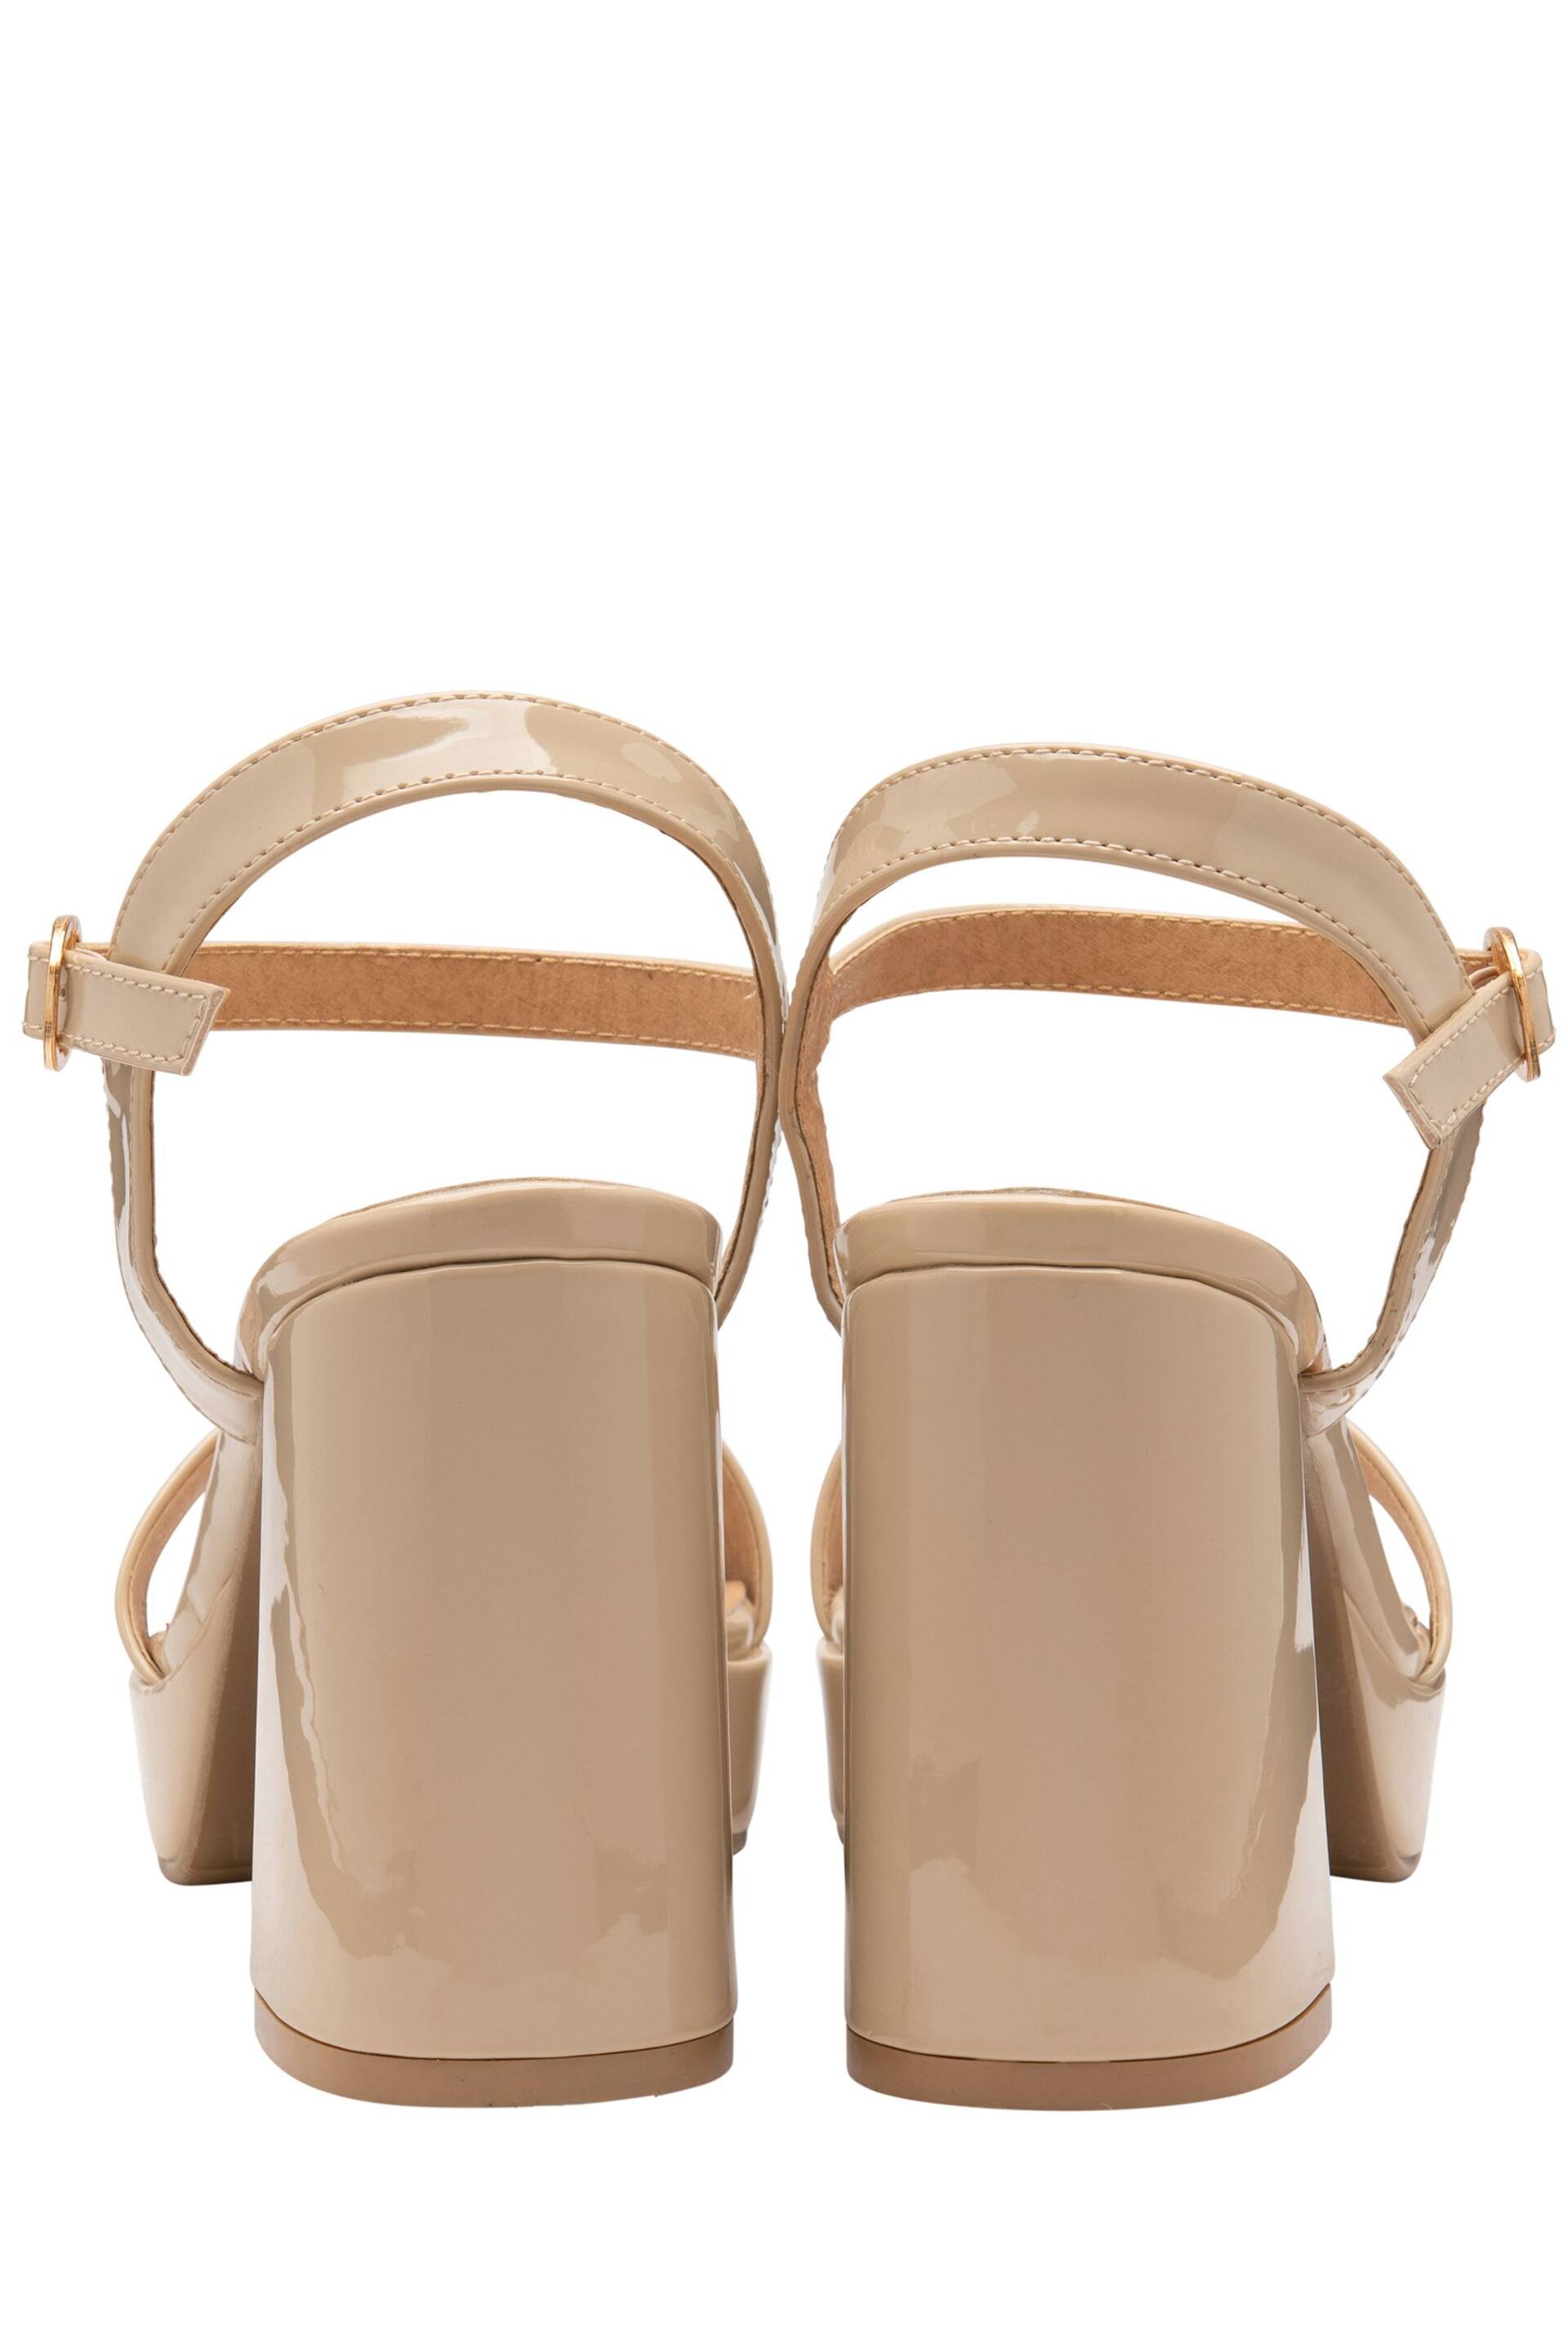 Ravel Nude Strappy Platform Denim Sandals - Image 3 of 4